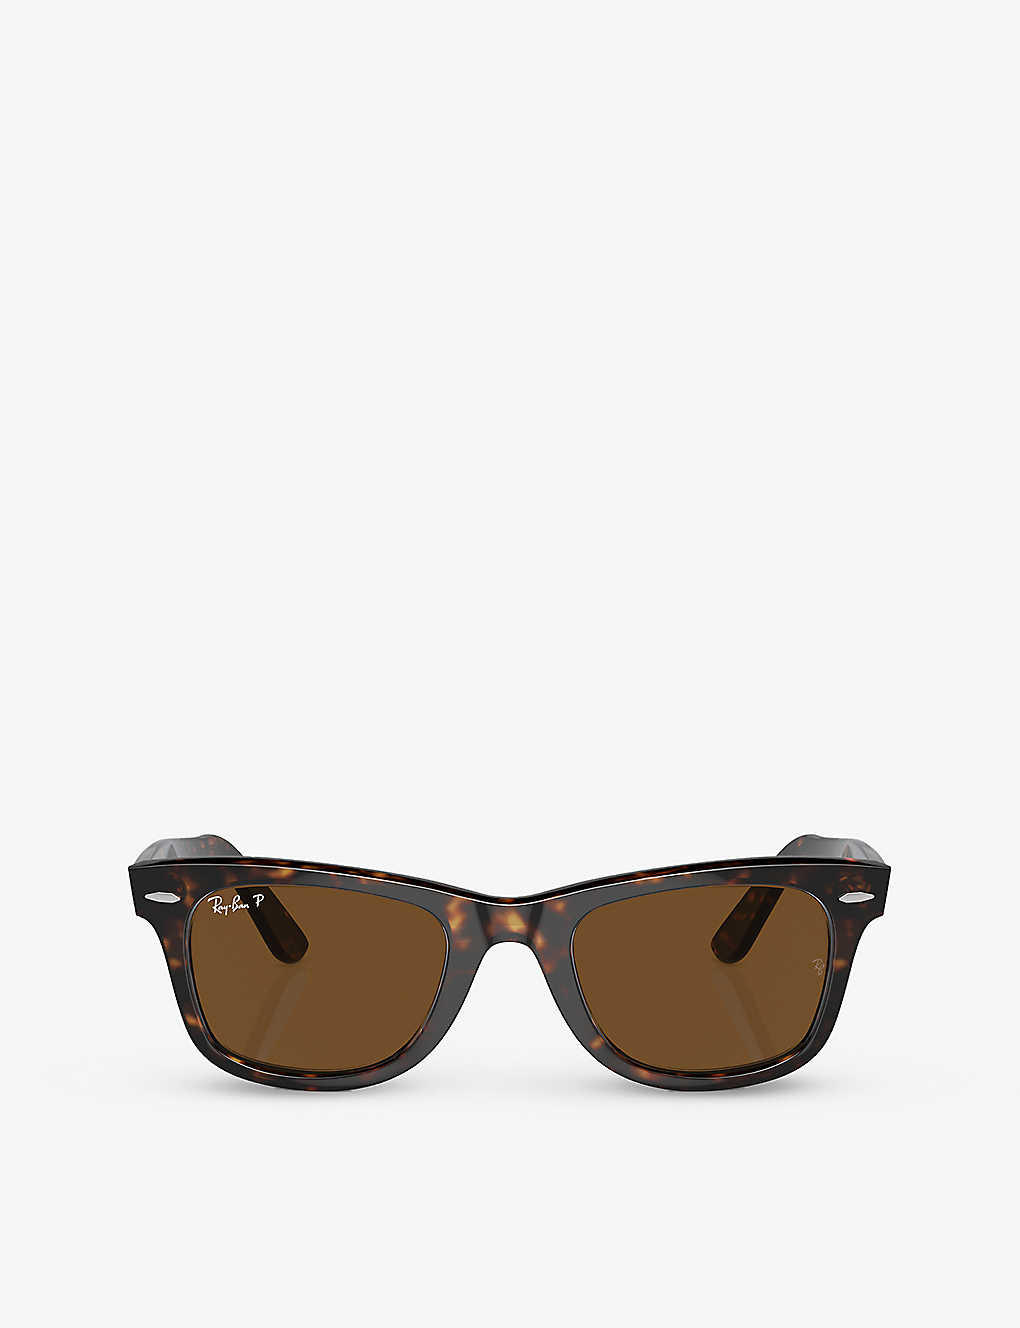 Ray Ban Ray-ban Womens Brown 0rb3546 Phantos-frame Metal Sunglasses